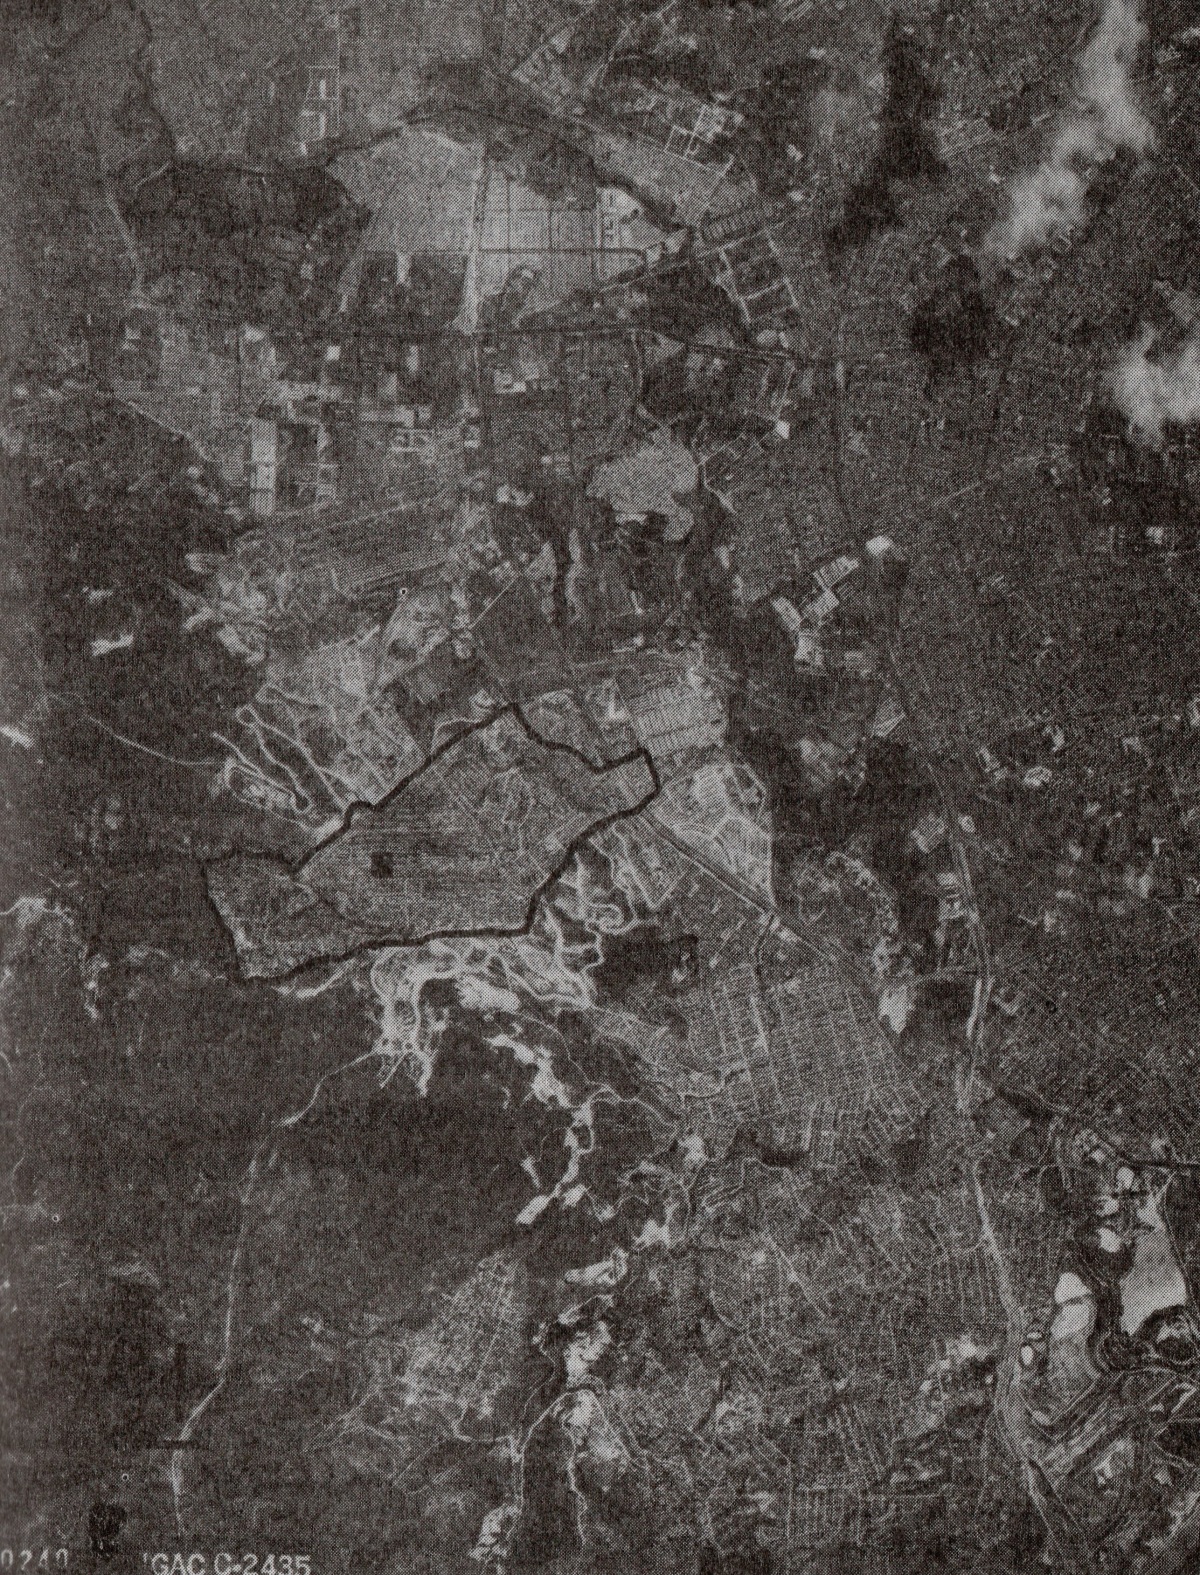 Fotografía aérea histórica del sector Jerusalén en el año 1991